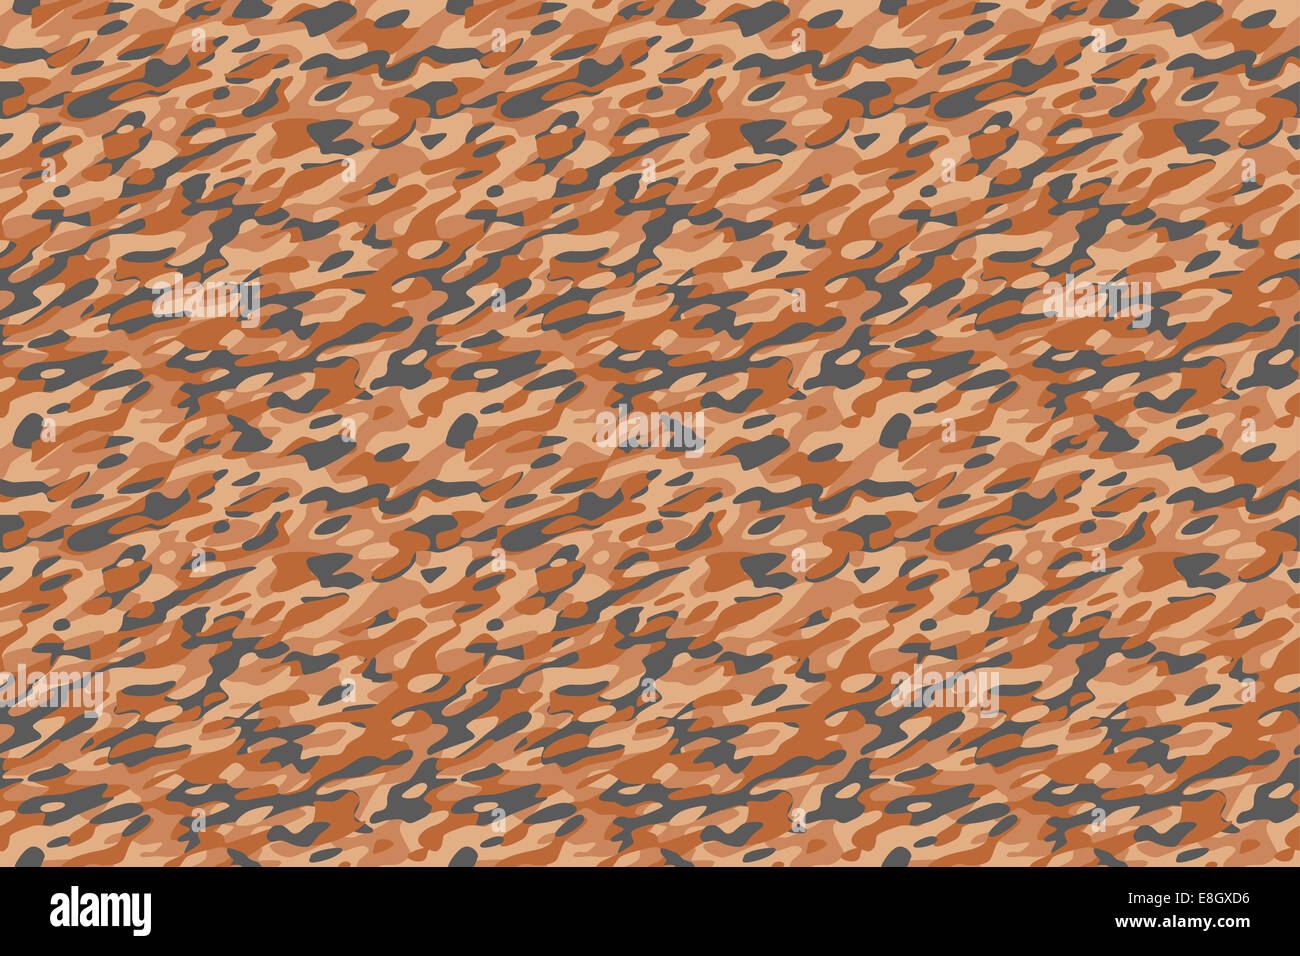 Il camuffamento deserto sfondo marrone - Deserto militare marrone camouflage pattern tessili. Tutti i lati si adattano perfettamente tra loro senza soluzione di continuità Foto Stock